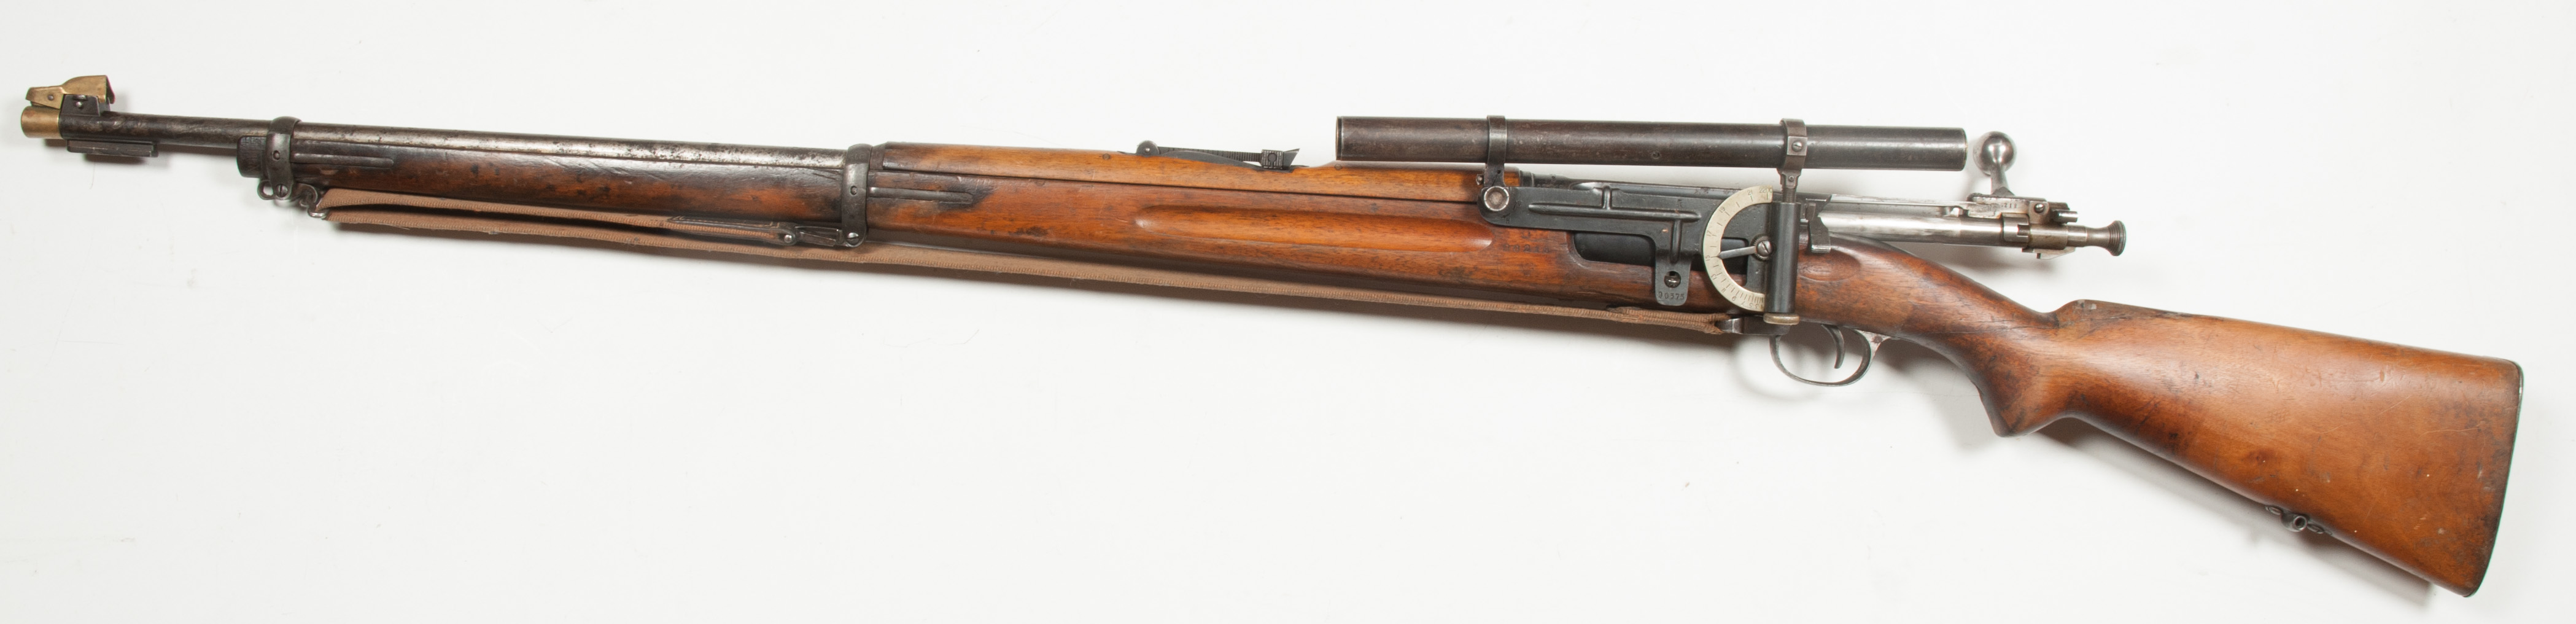 Rifle-Kongsberg-Krag-M1894-Kikkert-90218-4.jpg